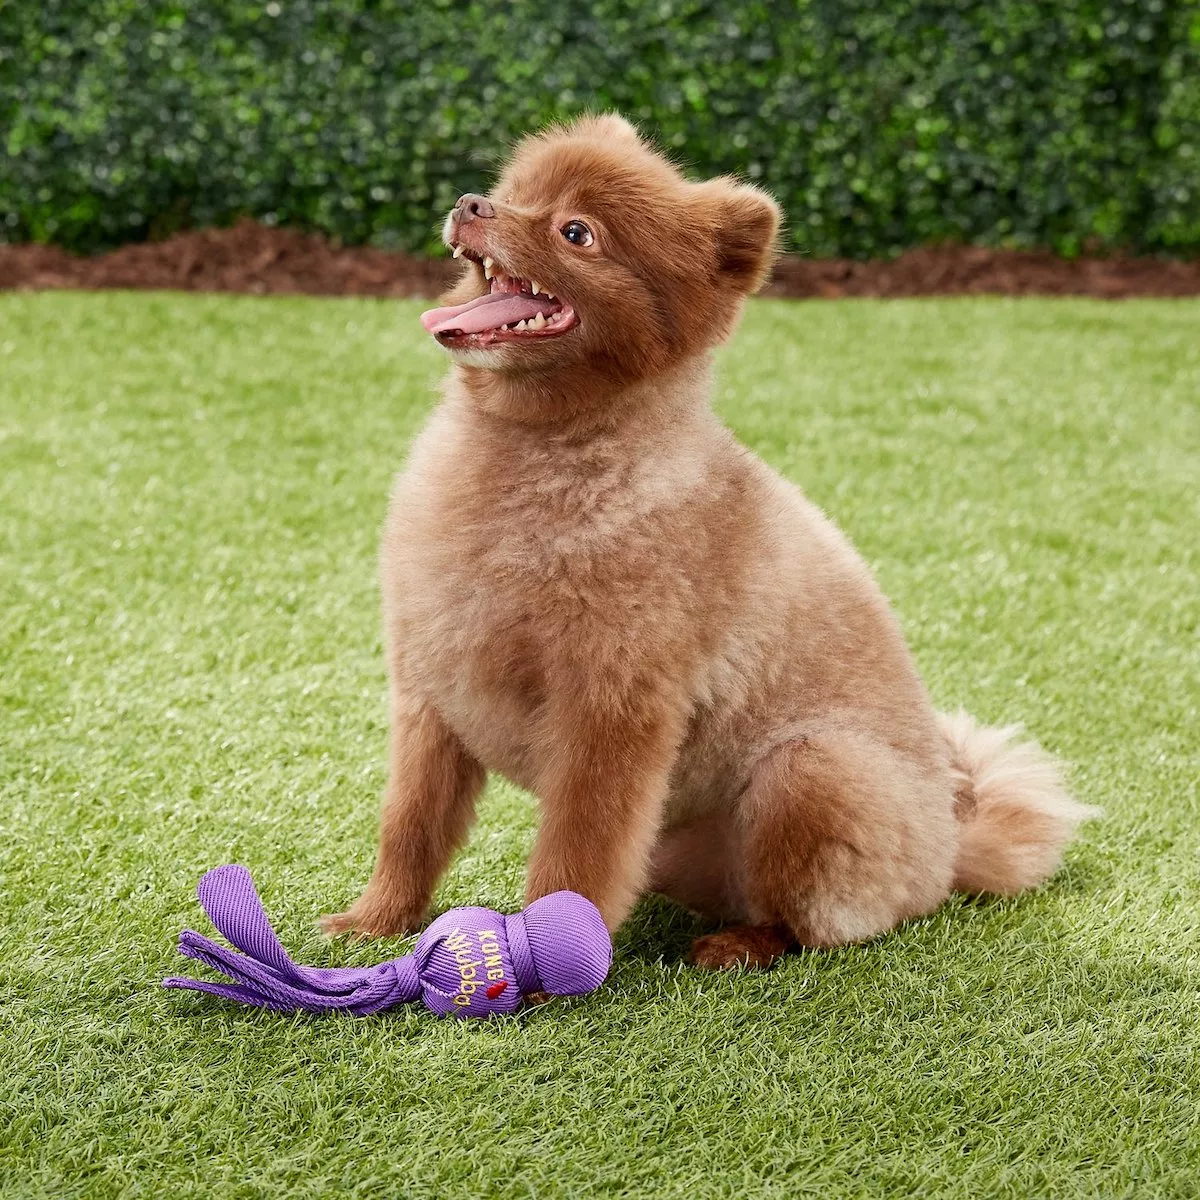 https://d.newsweek.com/en/full/1861607/best-dog-toys-small-breeds-0.webp